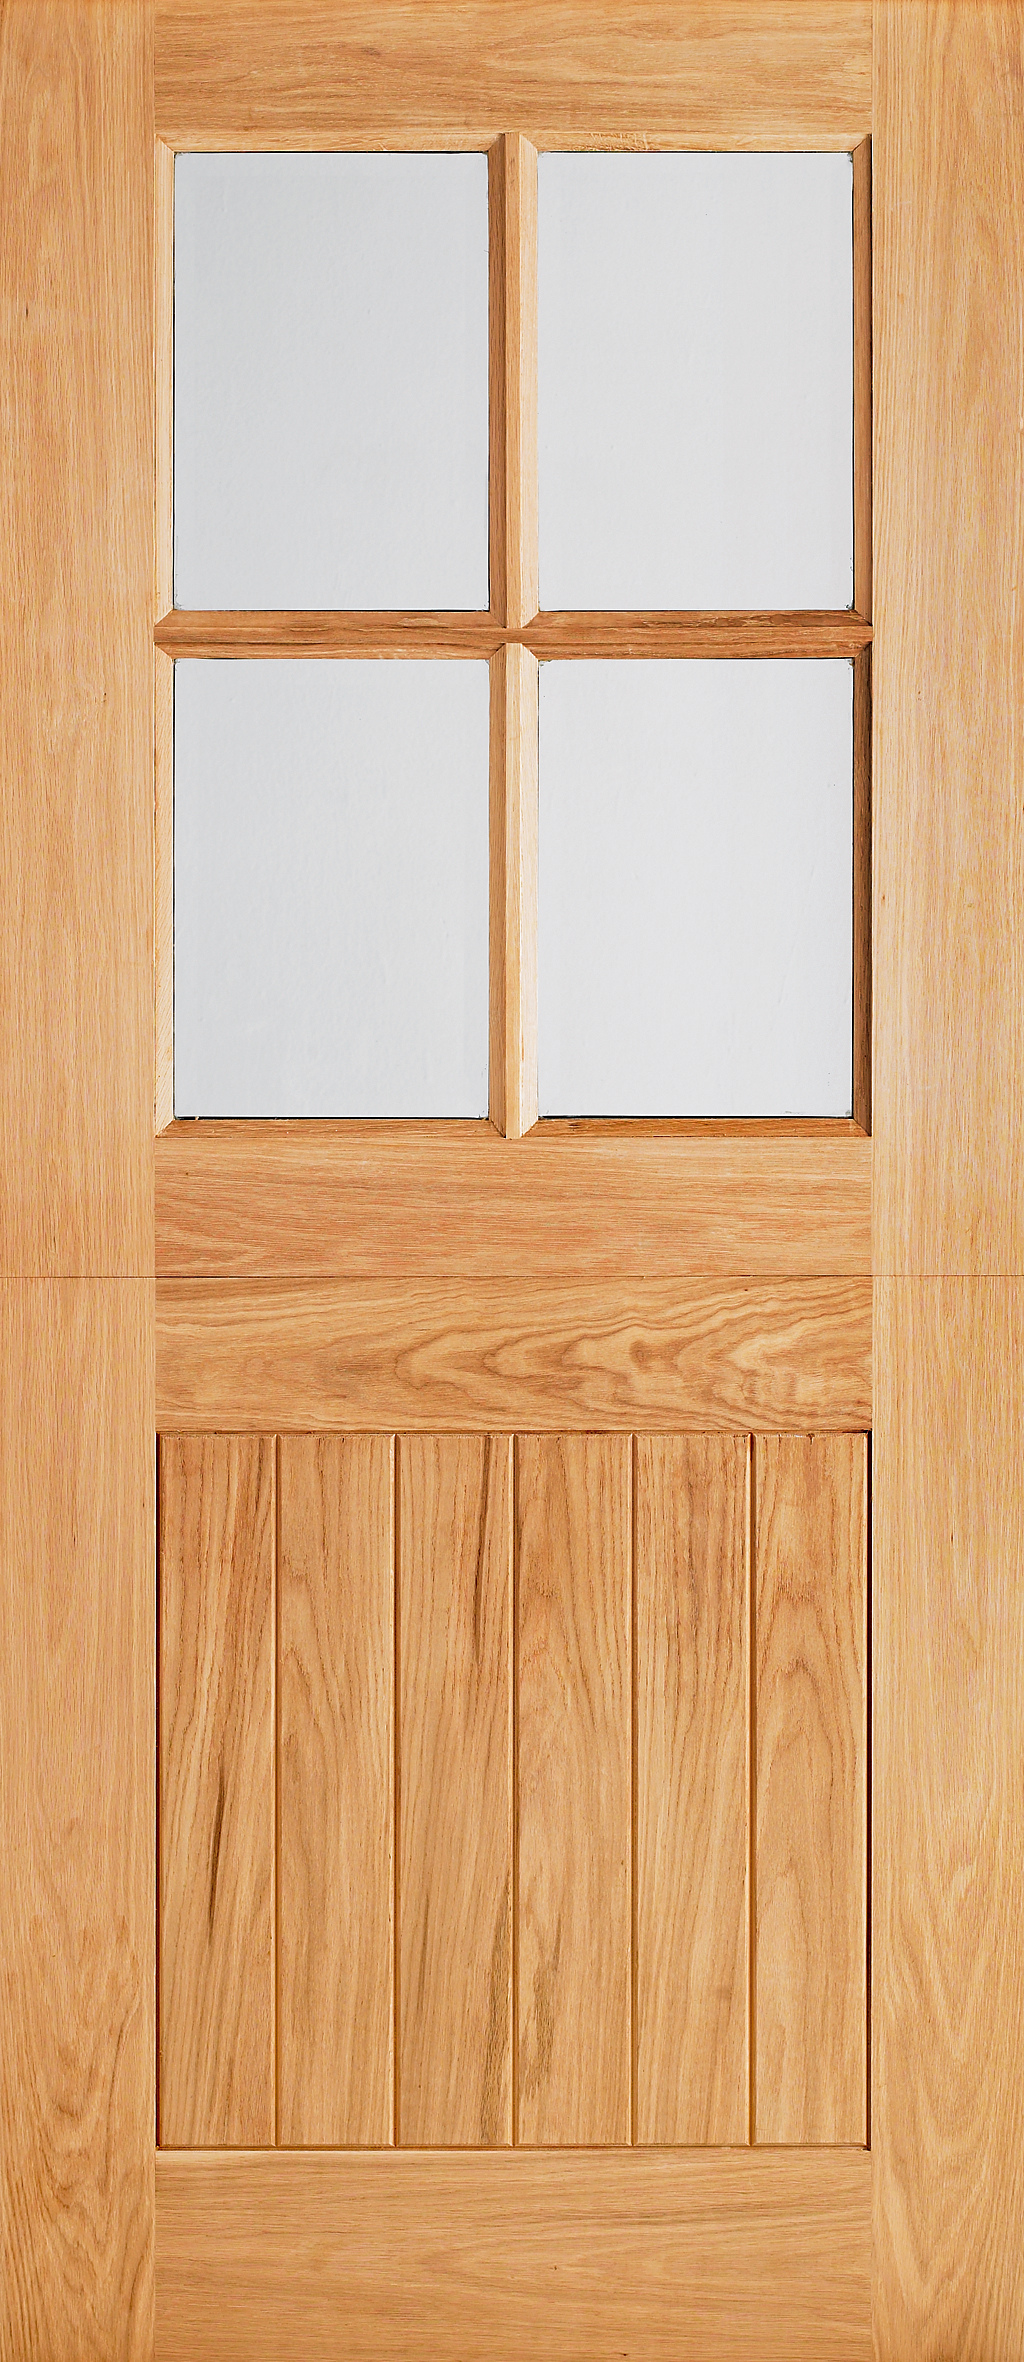 An image of Adoorable Oak 4 Panel Doors - Glazed Cottage Stable Veneer Door